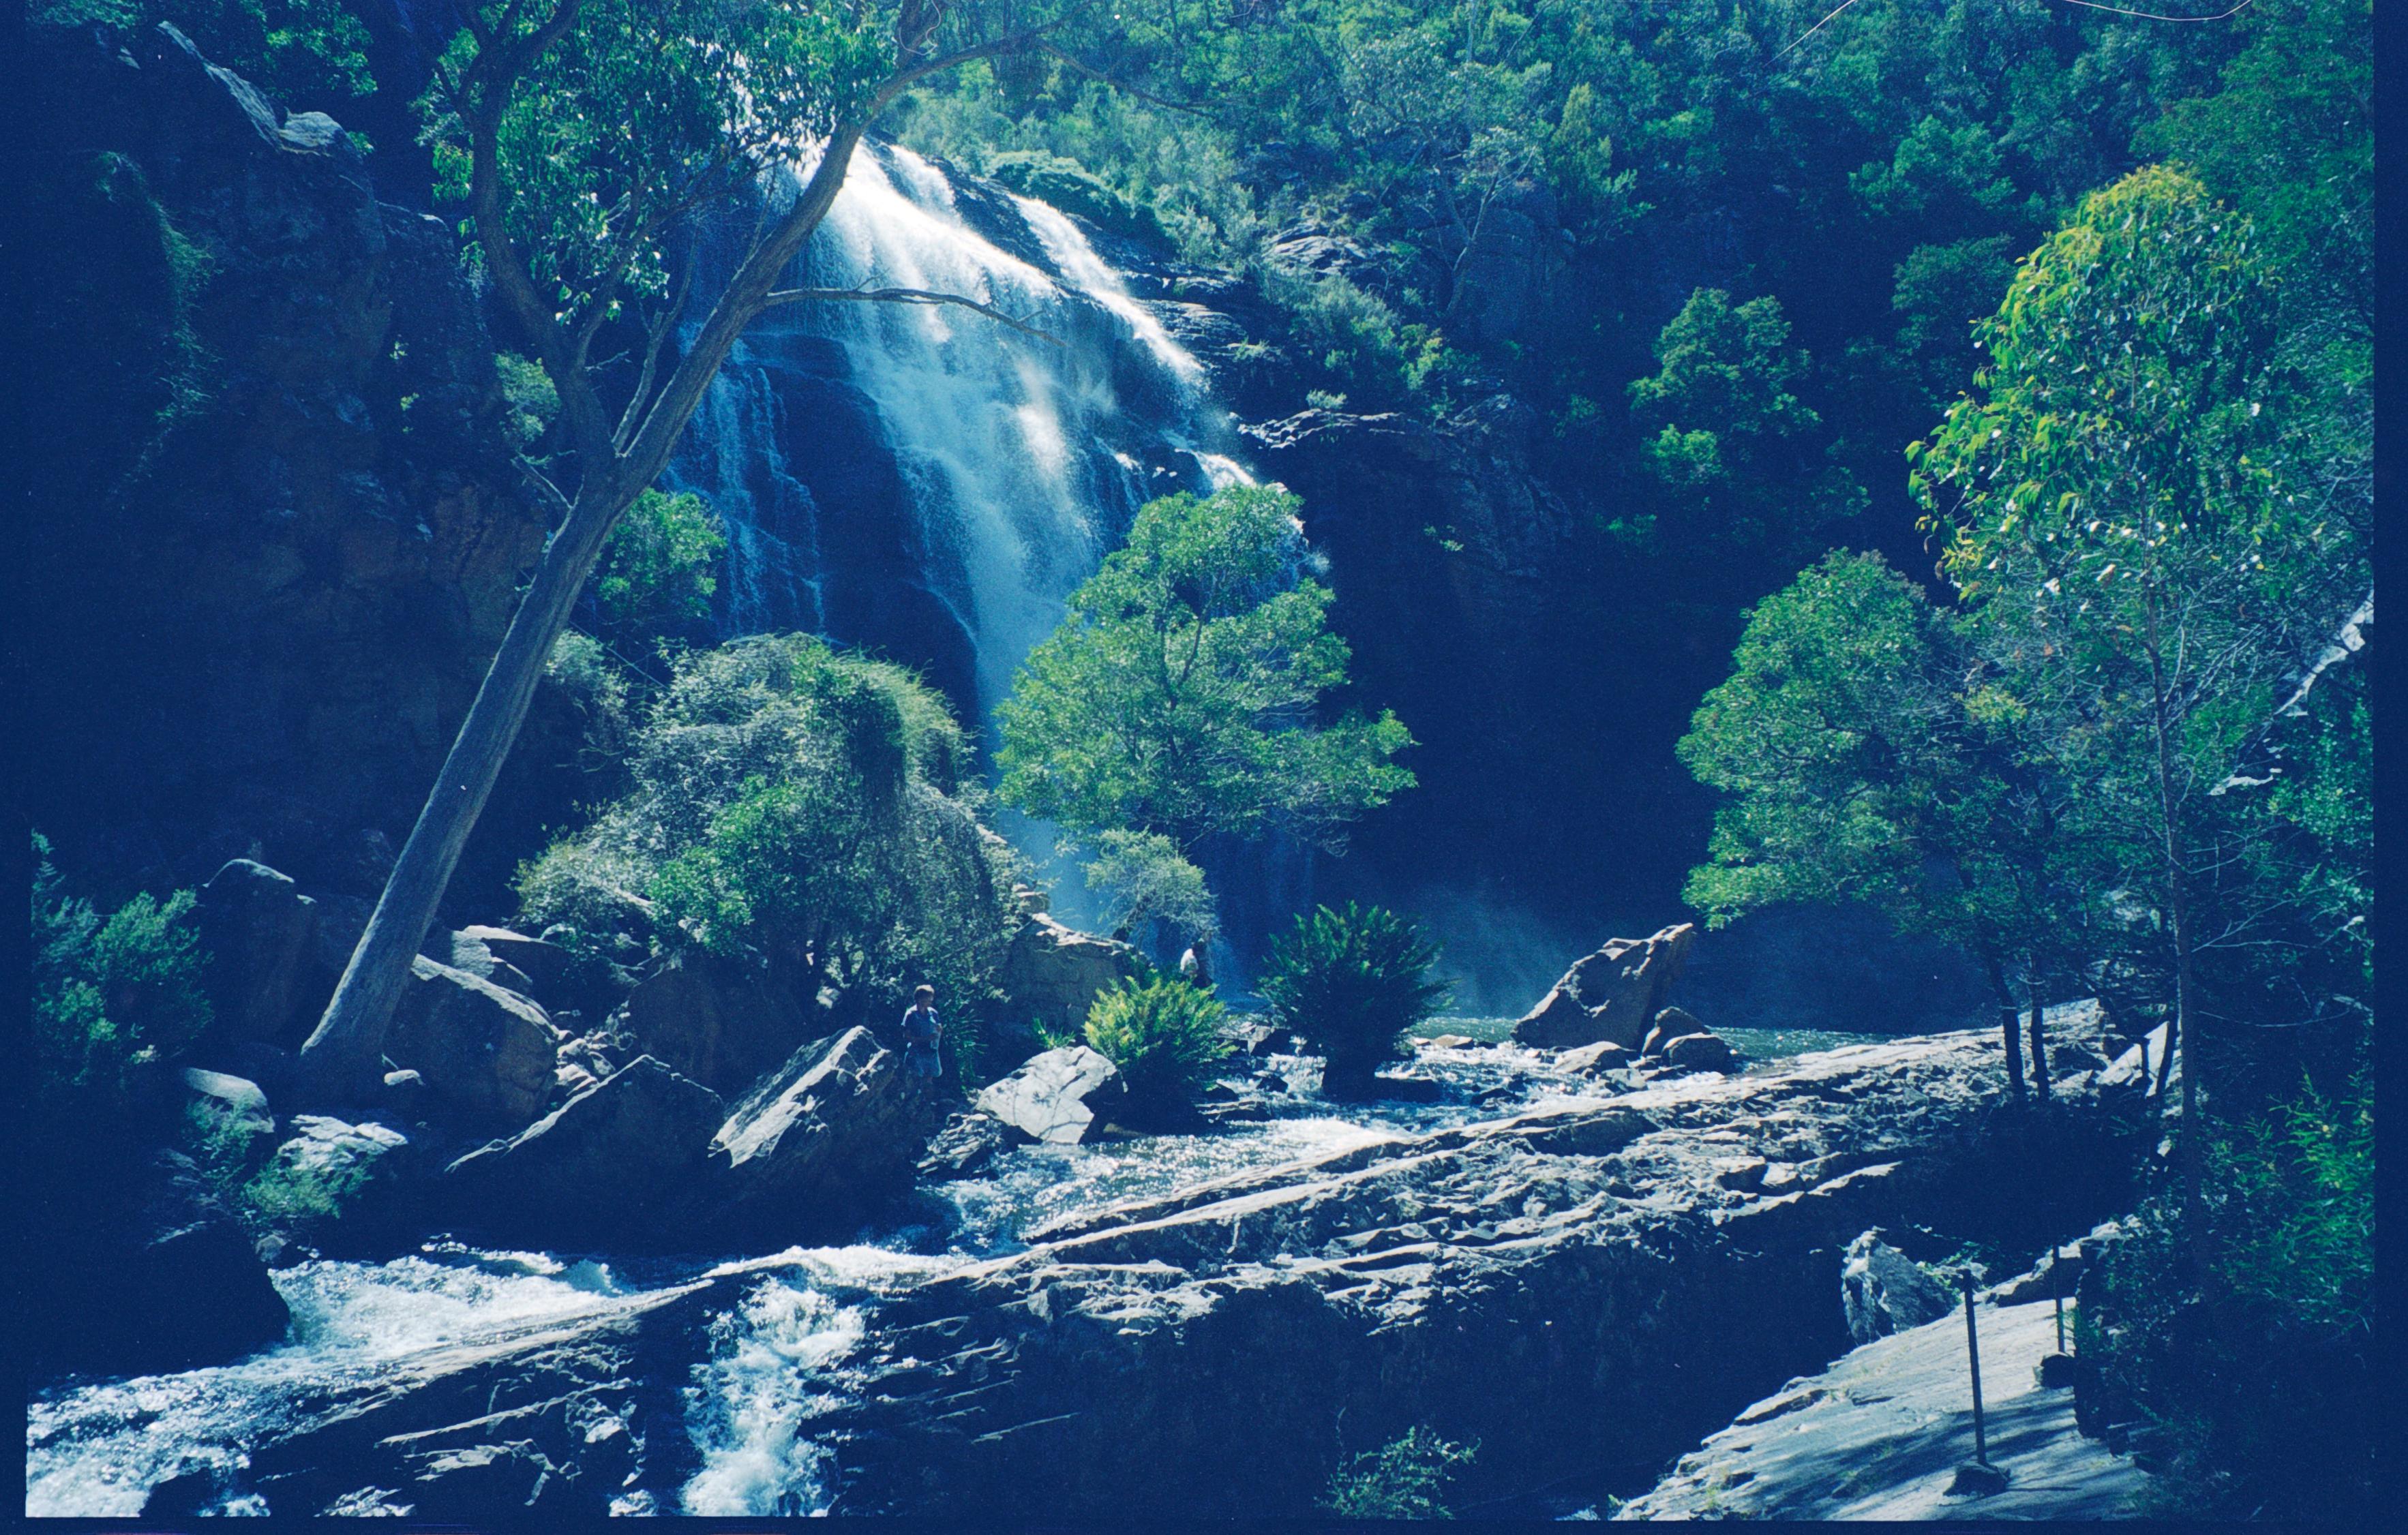 Marlborough Falls, Queensland, Australia